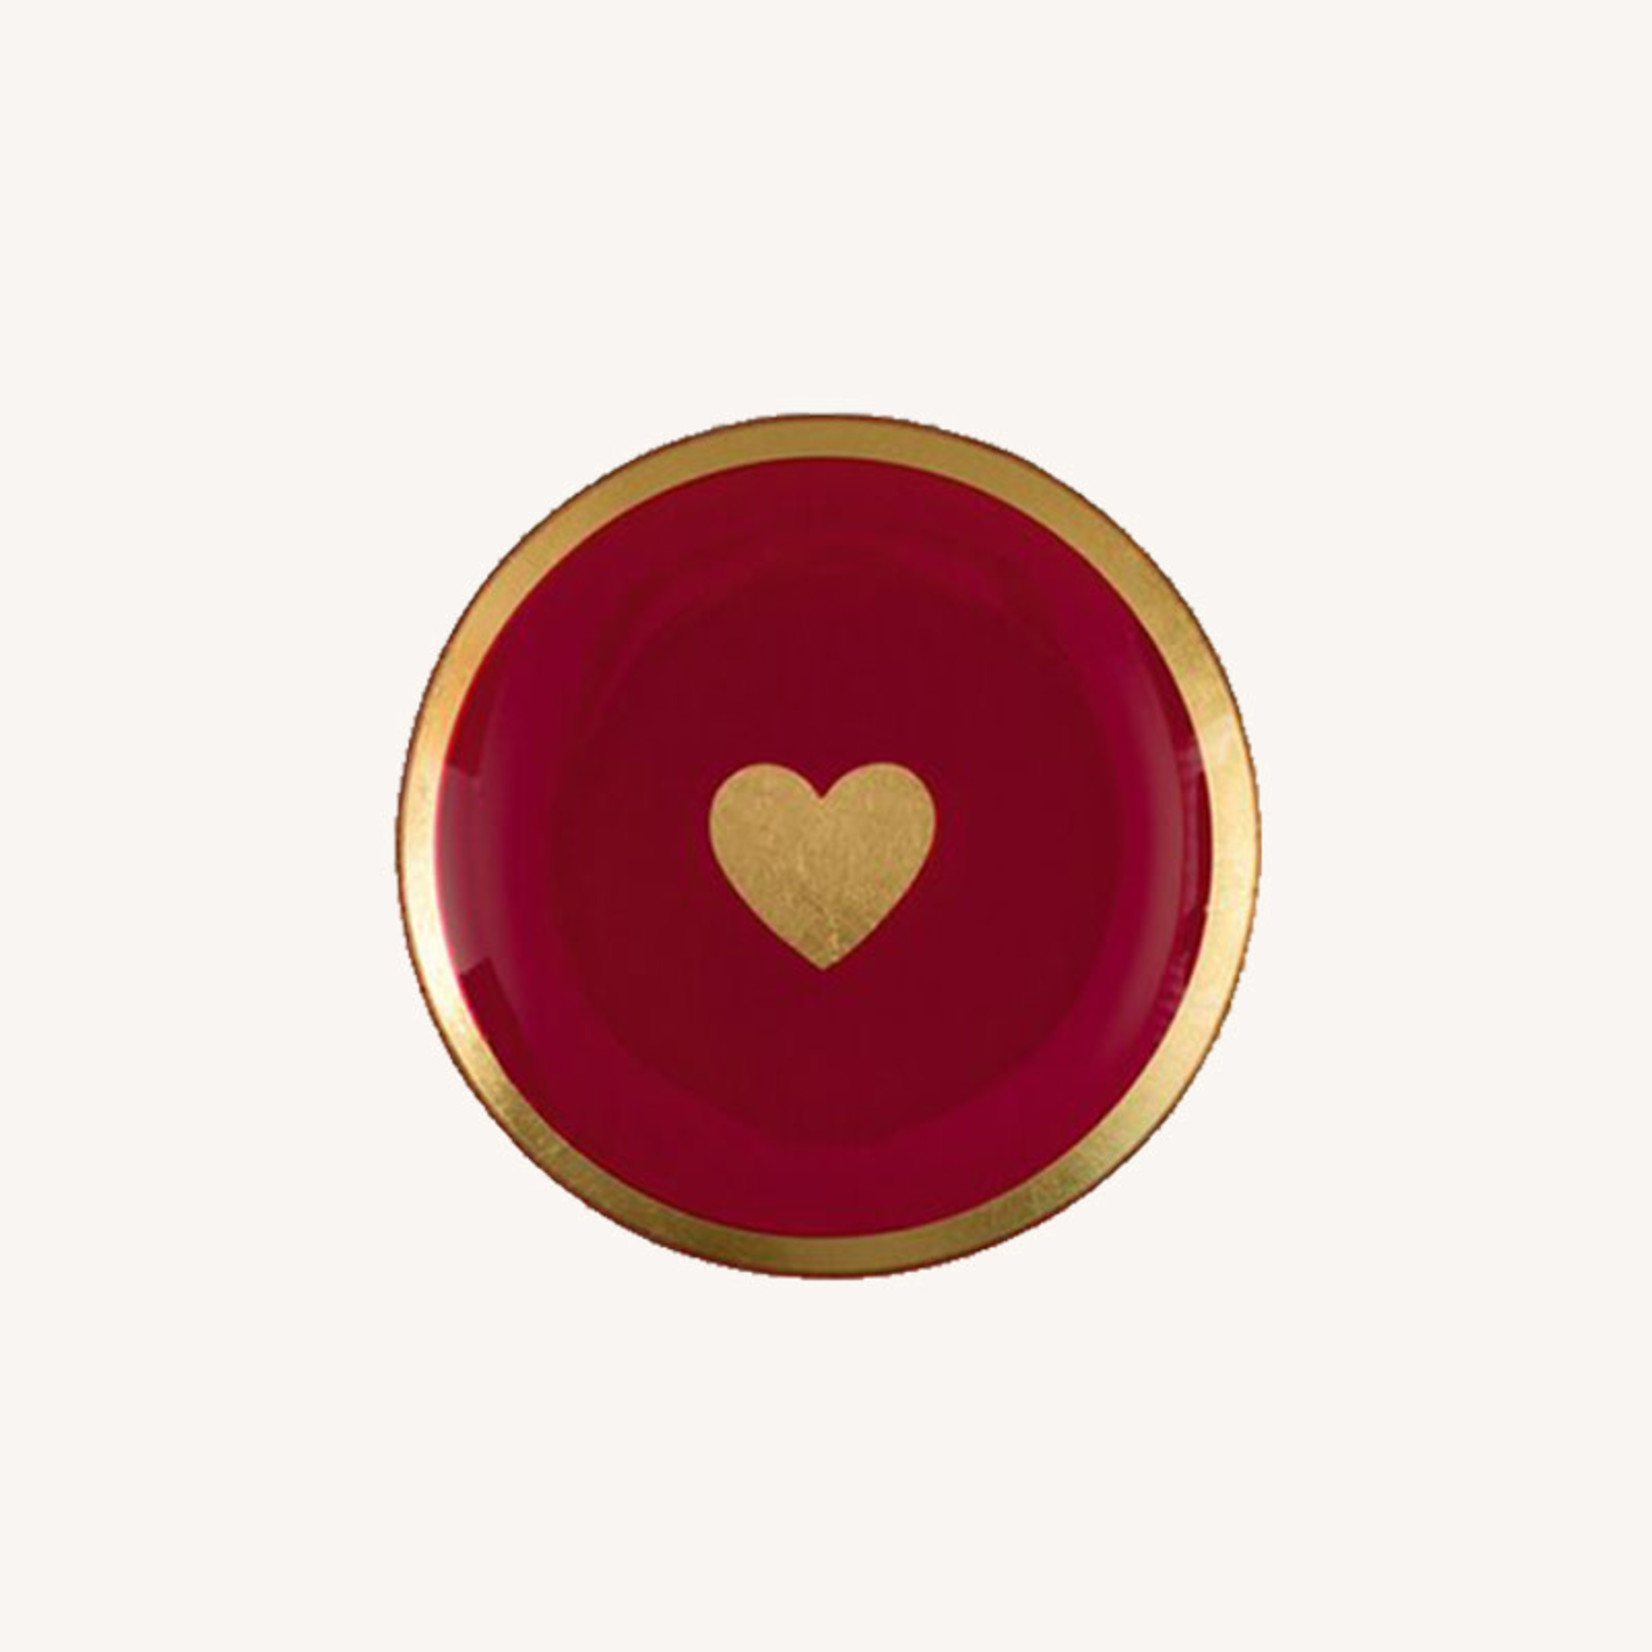 Love plates - Hart goud/roze